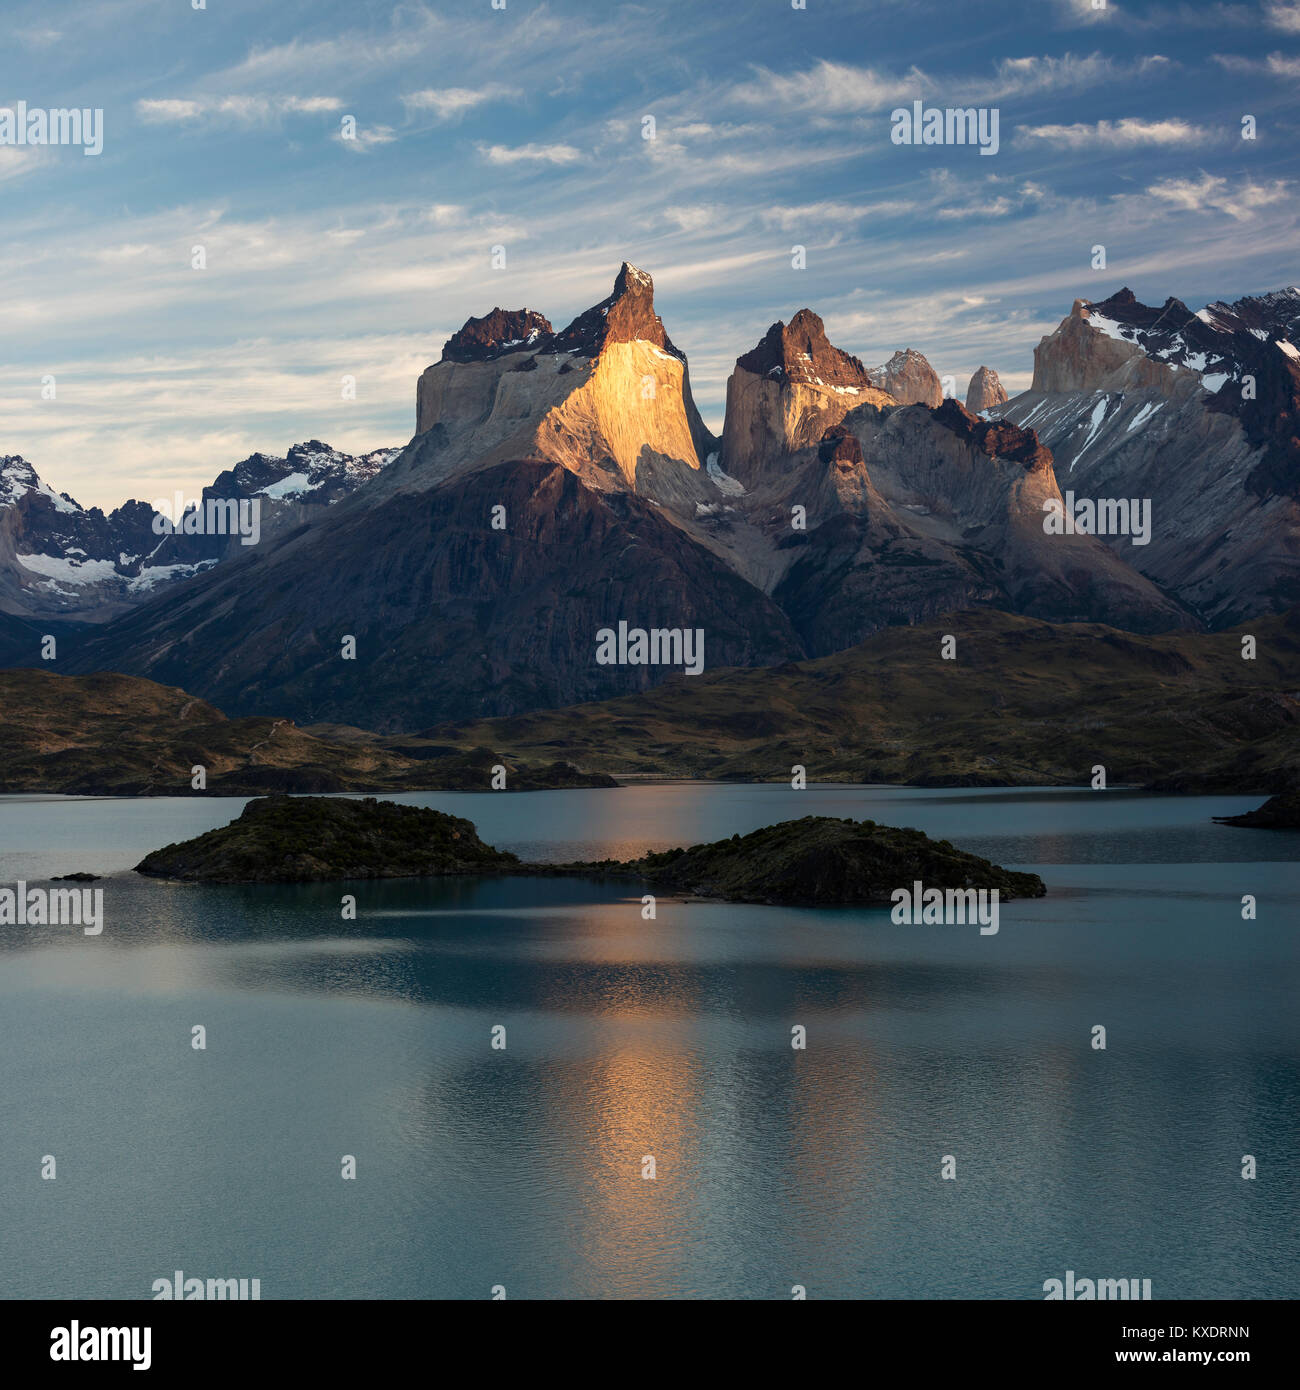 Massif de montagne Cuernos del Paine au lever du soleil, le lac glaciaire Lago Pehoe, Parc National Torres del Paine, Chili Banque D'Images